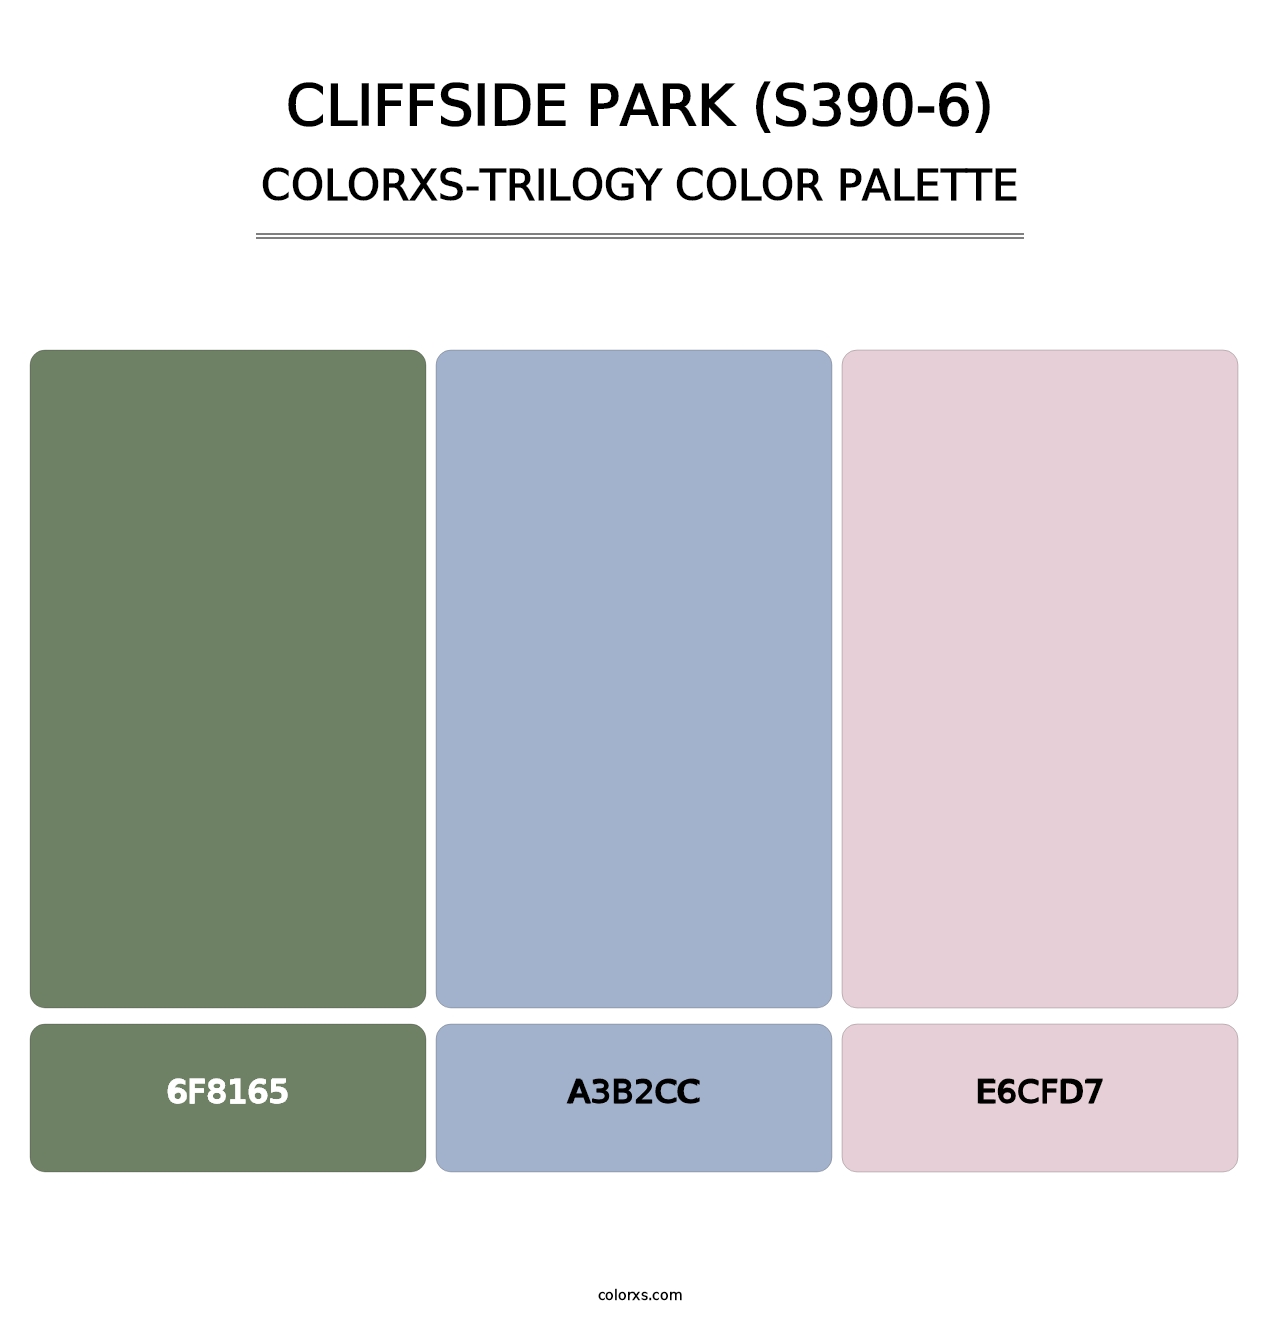 Cliffside Park (S390-6) - Colorxs Trilogy Palette